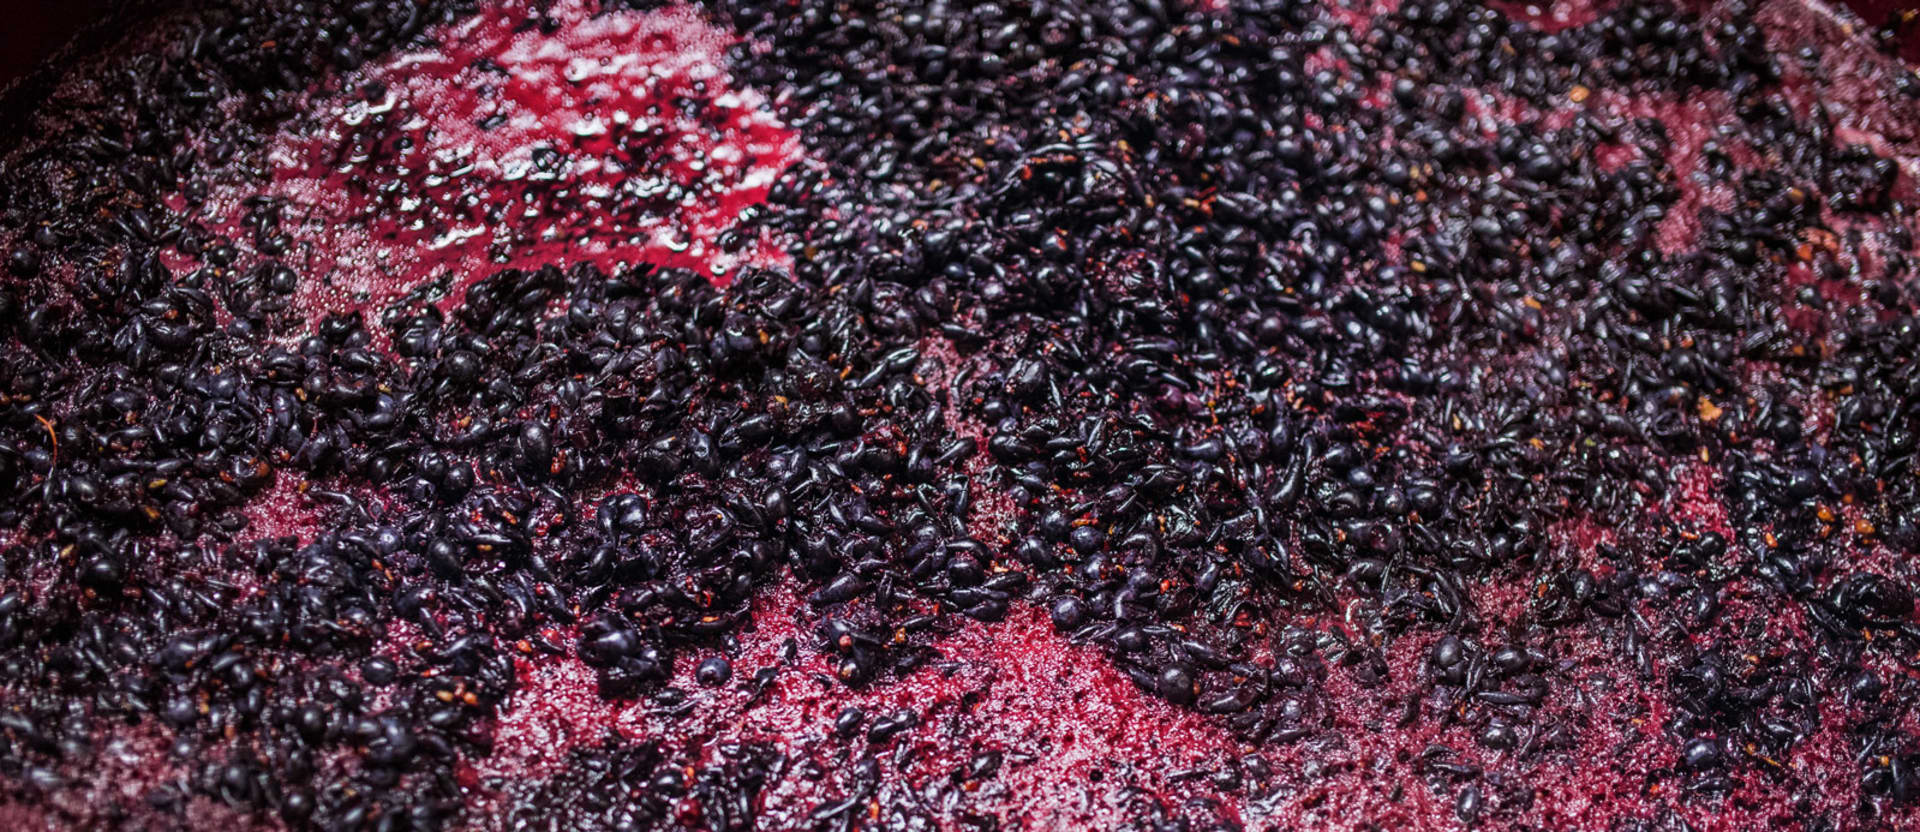 Matériel vinicole pour la fermentation alcoolique, la macération, le dosage des auxiliaires œnologiques